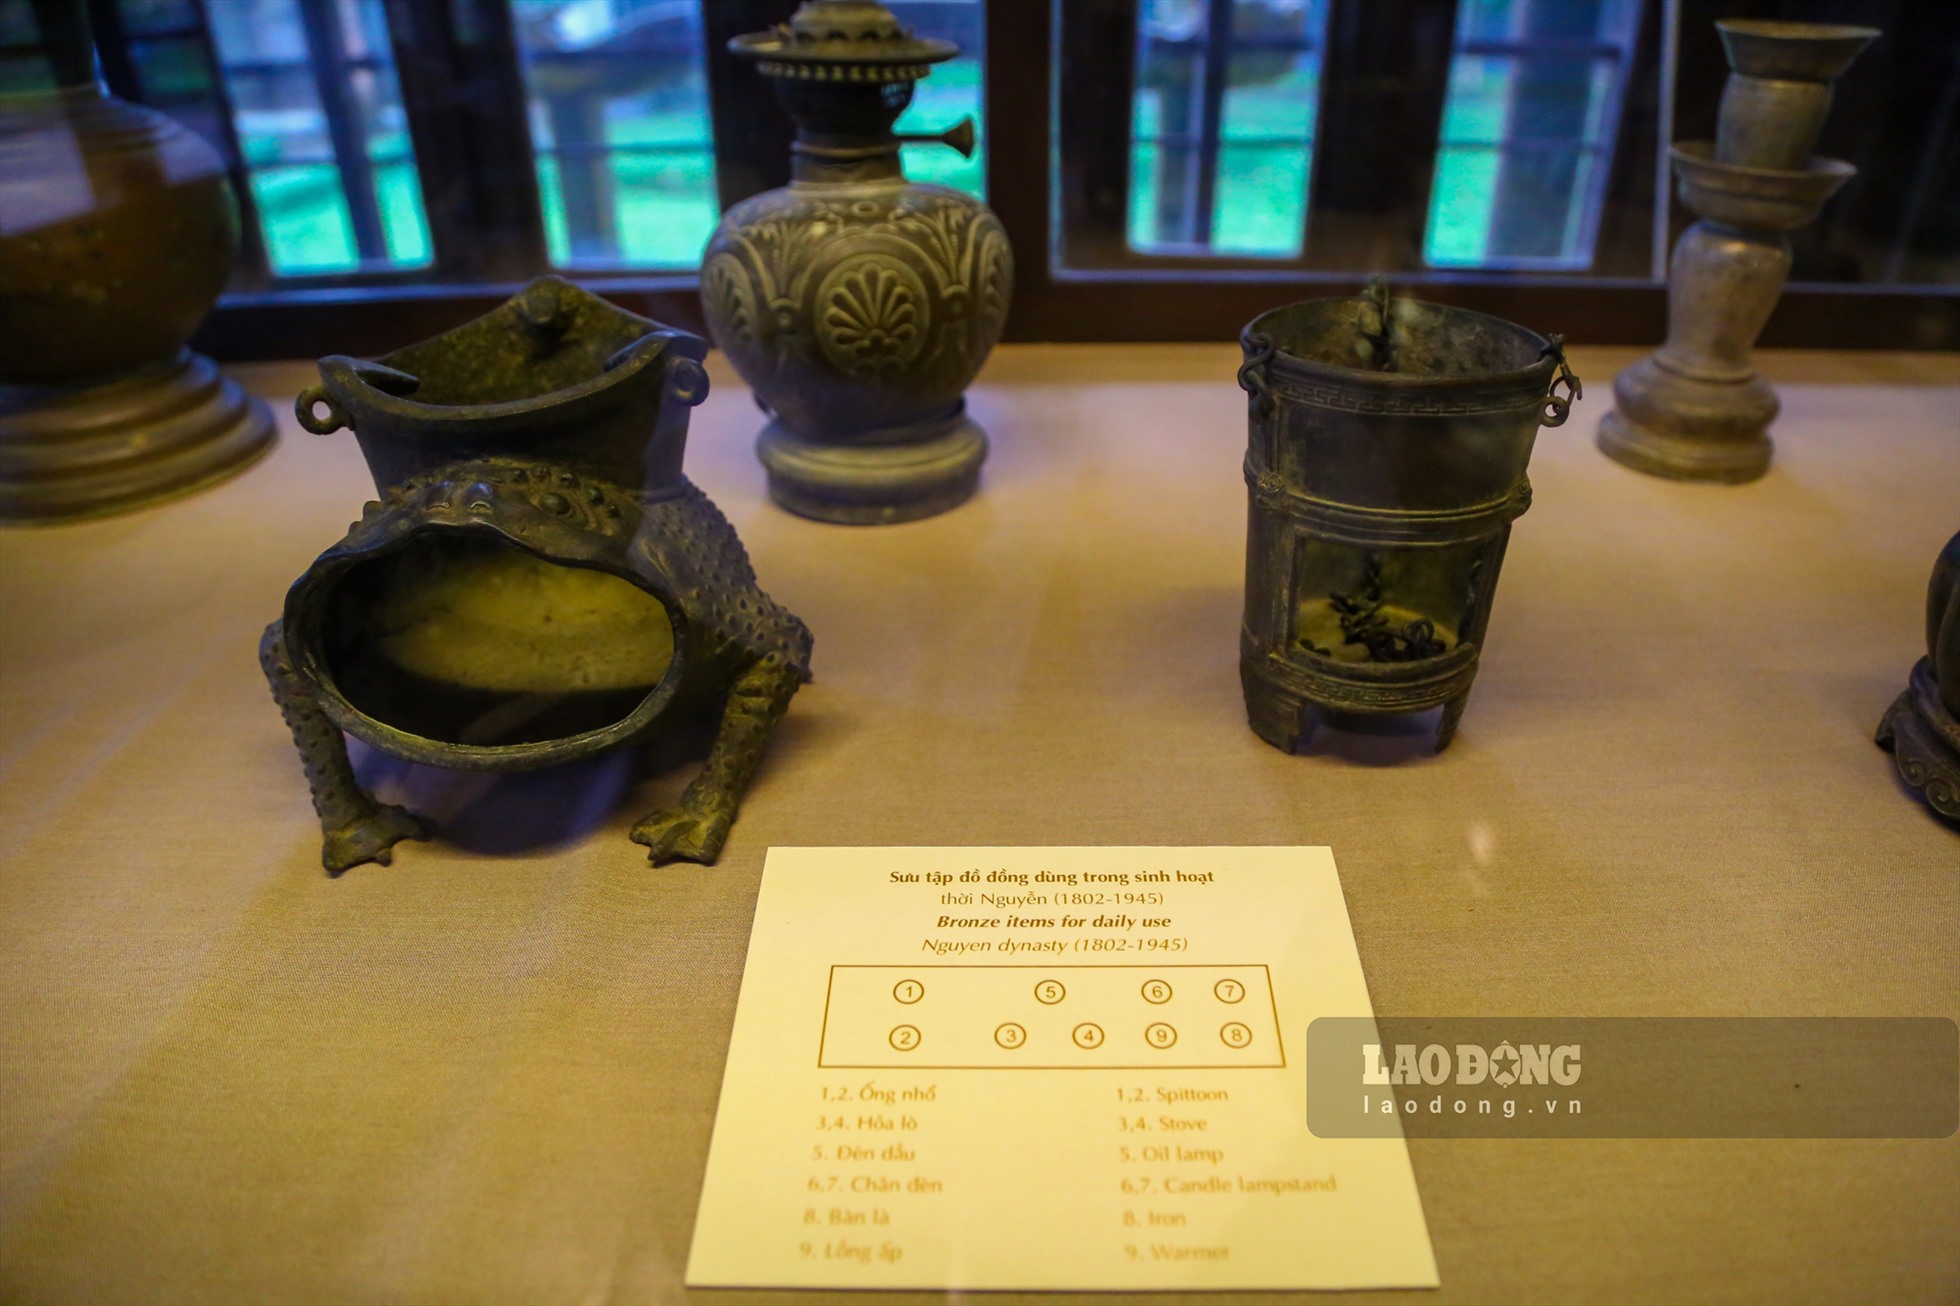 Một bộ sưu tập đồ đồng dùng trong sinh hoạt thời Nguyễn (1802 - 1945).